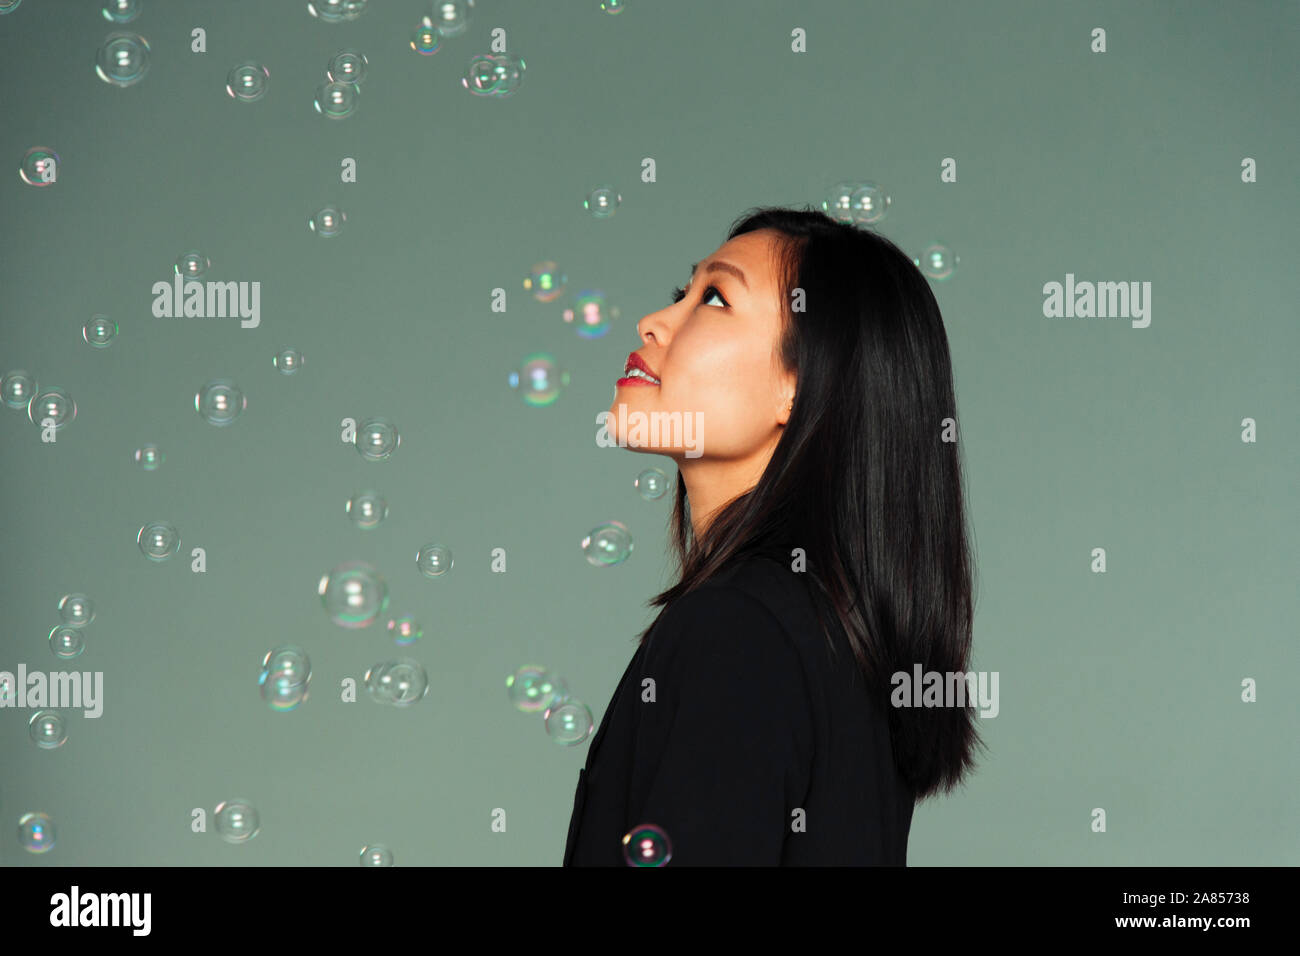 Curieux, imaginatif jeune femme regardant tomber bubbles Banque D'Images